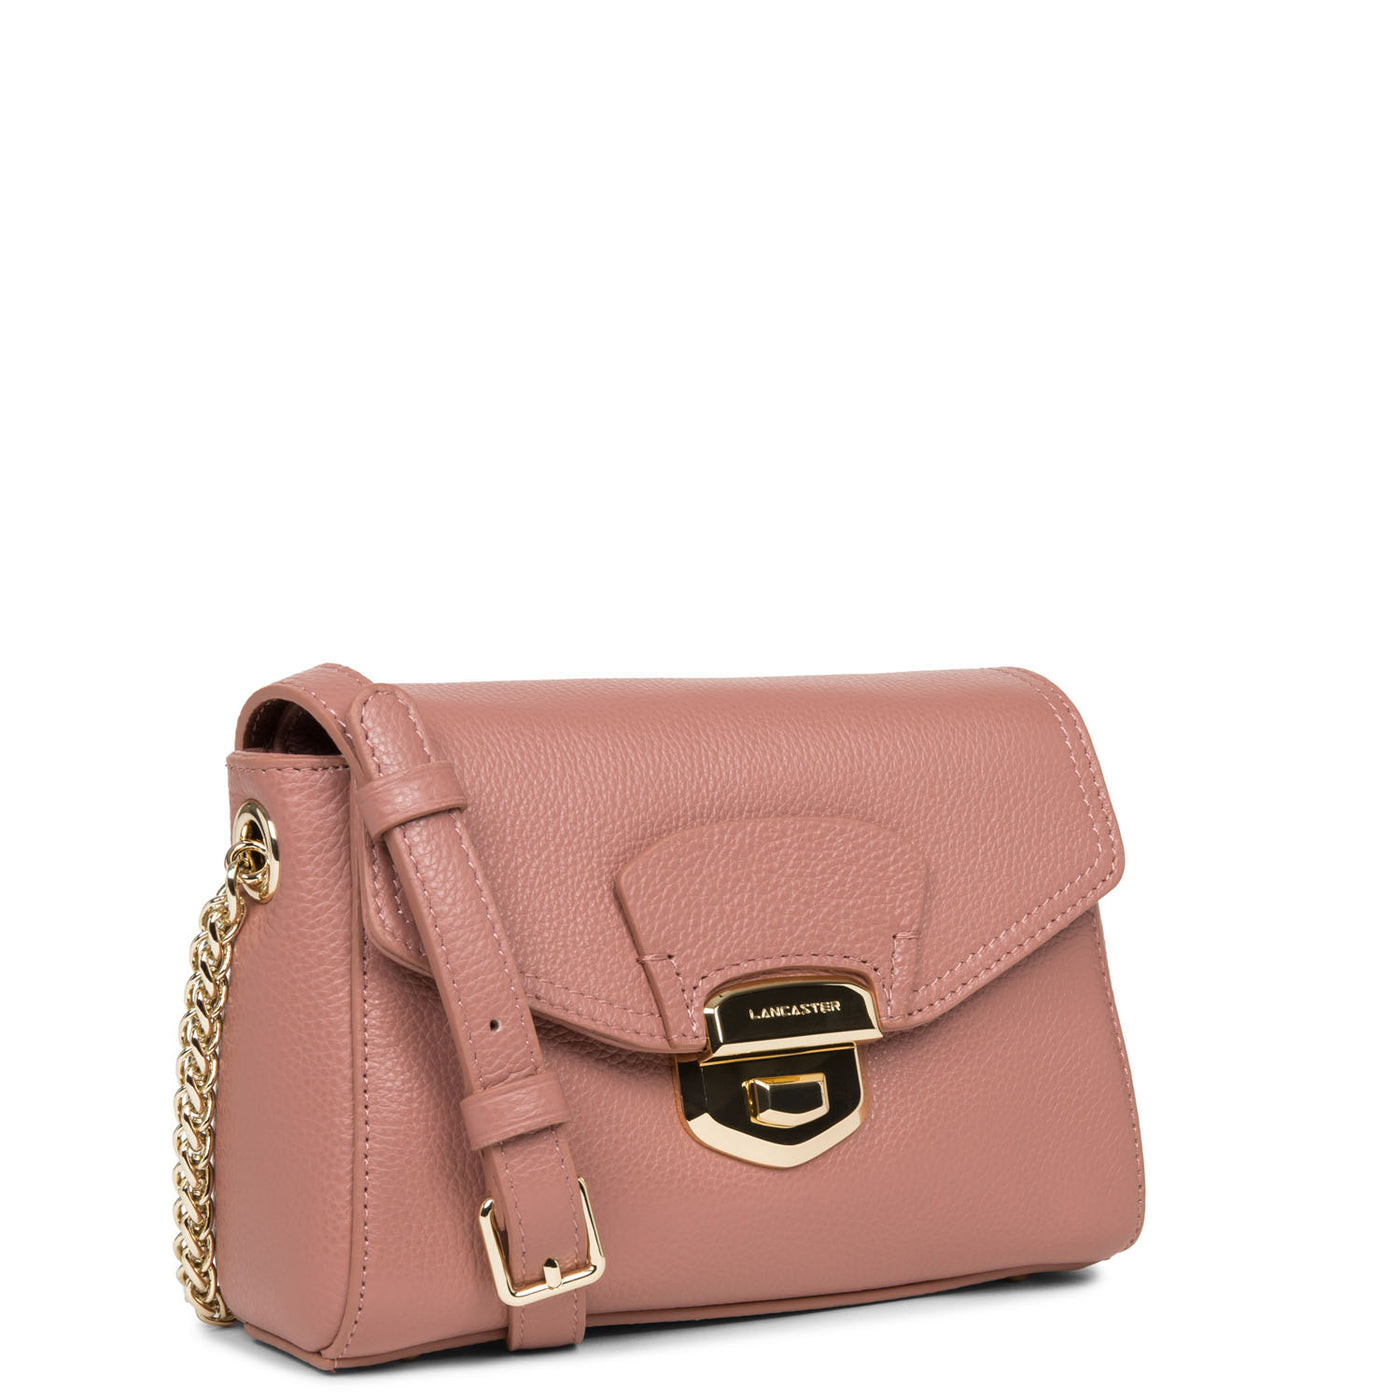 sac trotteur - foulonné milano #couleur_rose-cendre